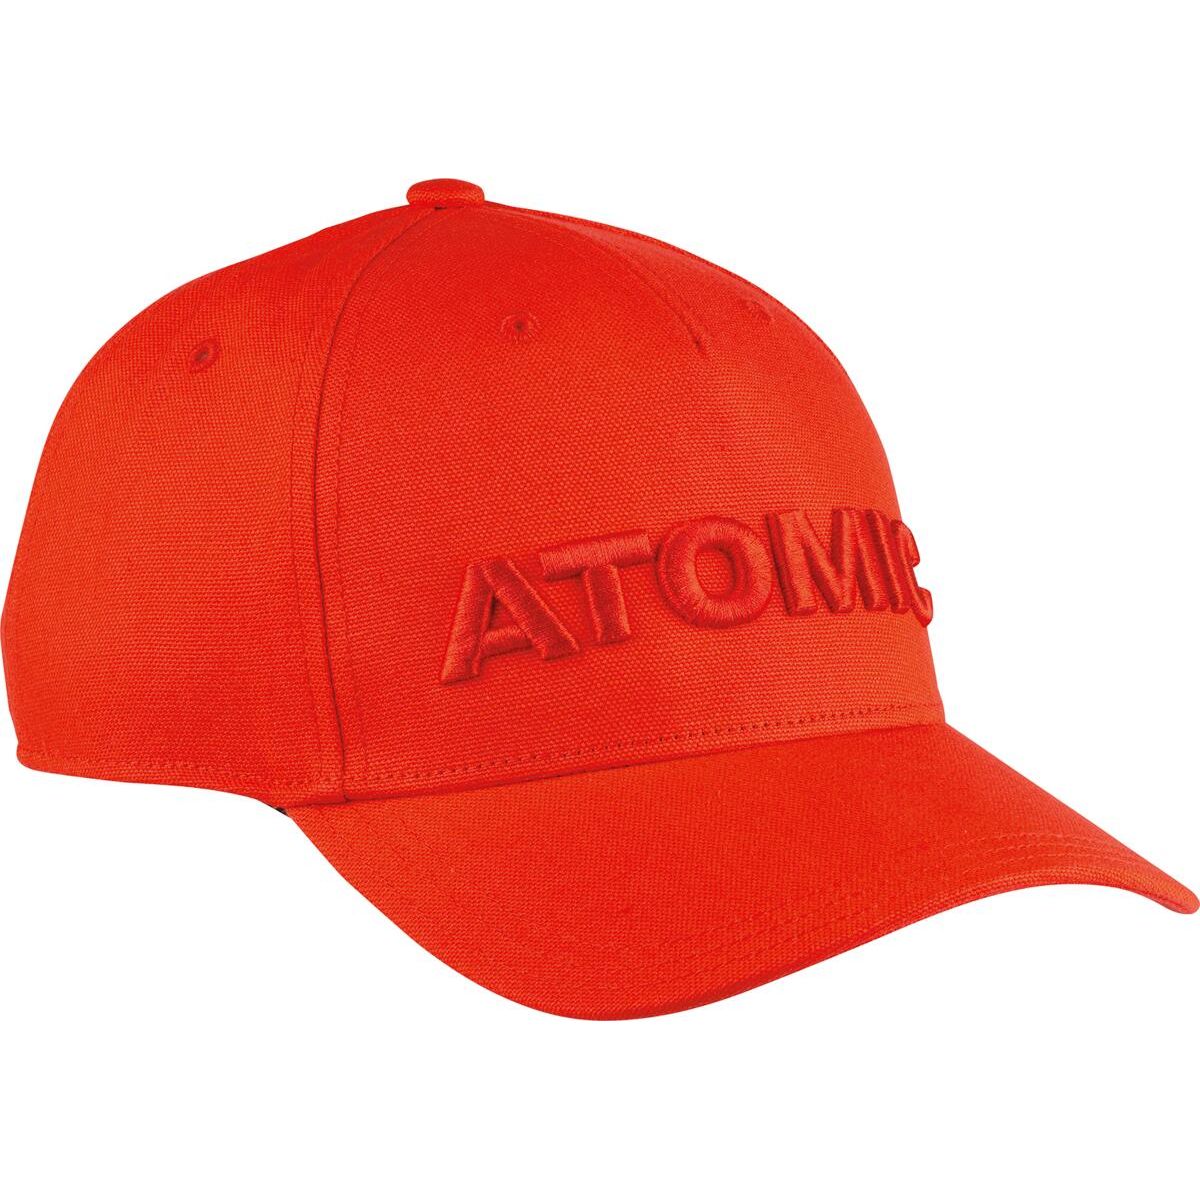 Atomic Racing Cap